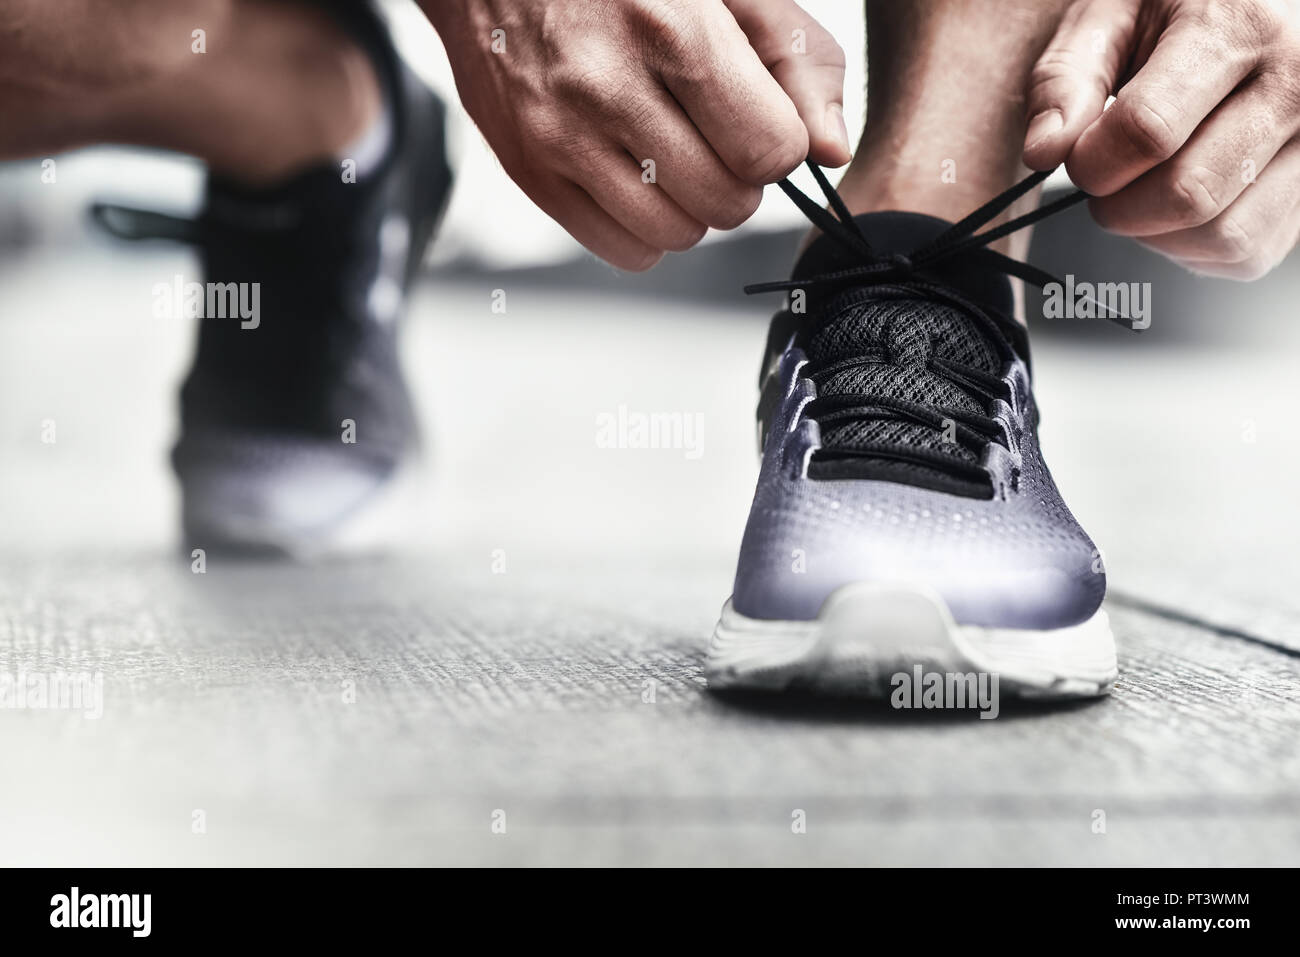 Immagine ritagliata di mani lacci delle scarpe di legatura su sneaker,  superficie in esecuzione sullo sfondo. Le mani di uno sportivo con  contapassi lacci delle scarpe di legatura su sneaker sportiva. Ru